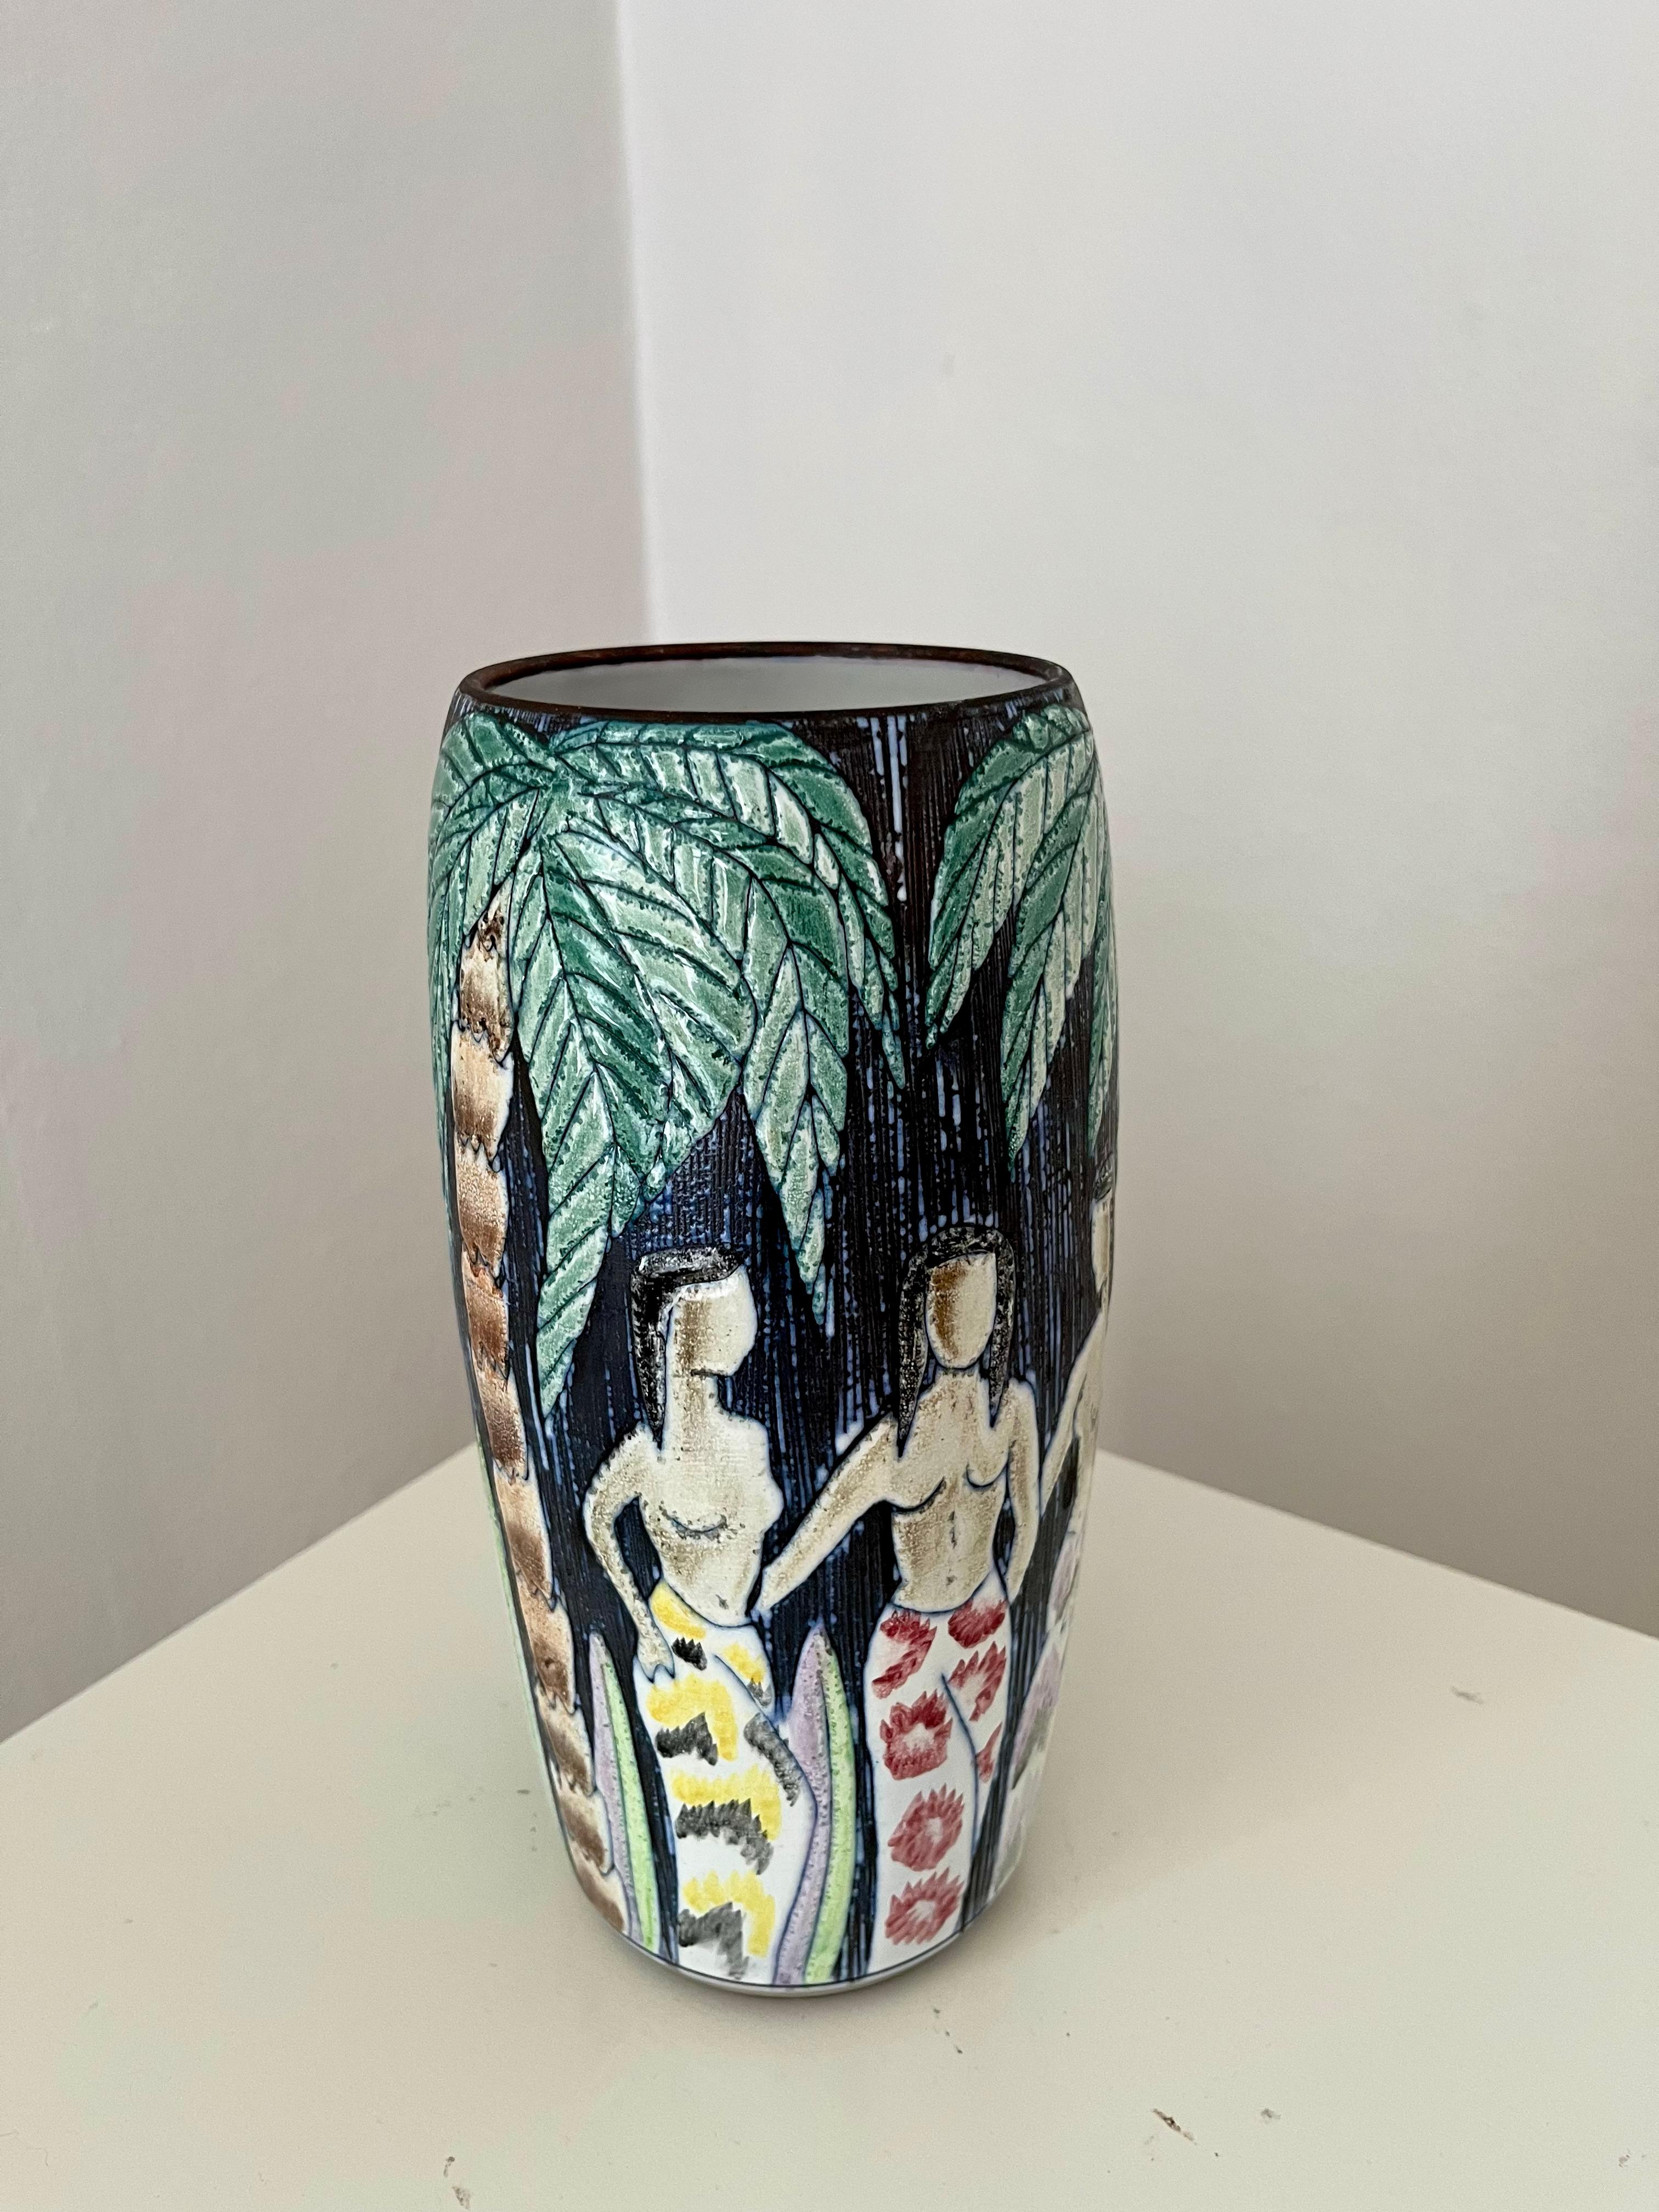 1960er Jahre schwedische handdekorierte Vase von Alingsås Ceramic mit Palme, Blumen und Frauen. Hoch dekoriert und detailliert in augenfreundlichen Nuancen von Grün, Weiß, Rosa, Gelb, Violett und Rot. 

Handgefertigt und verziert mit der